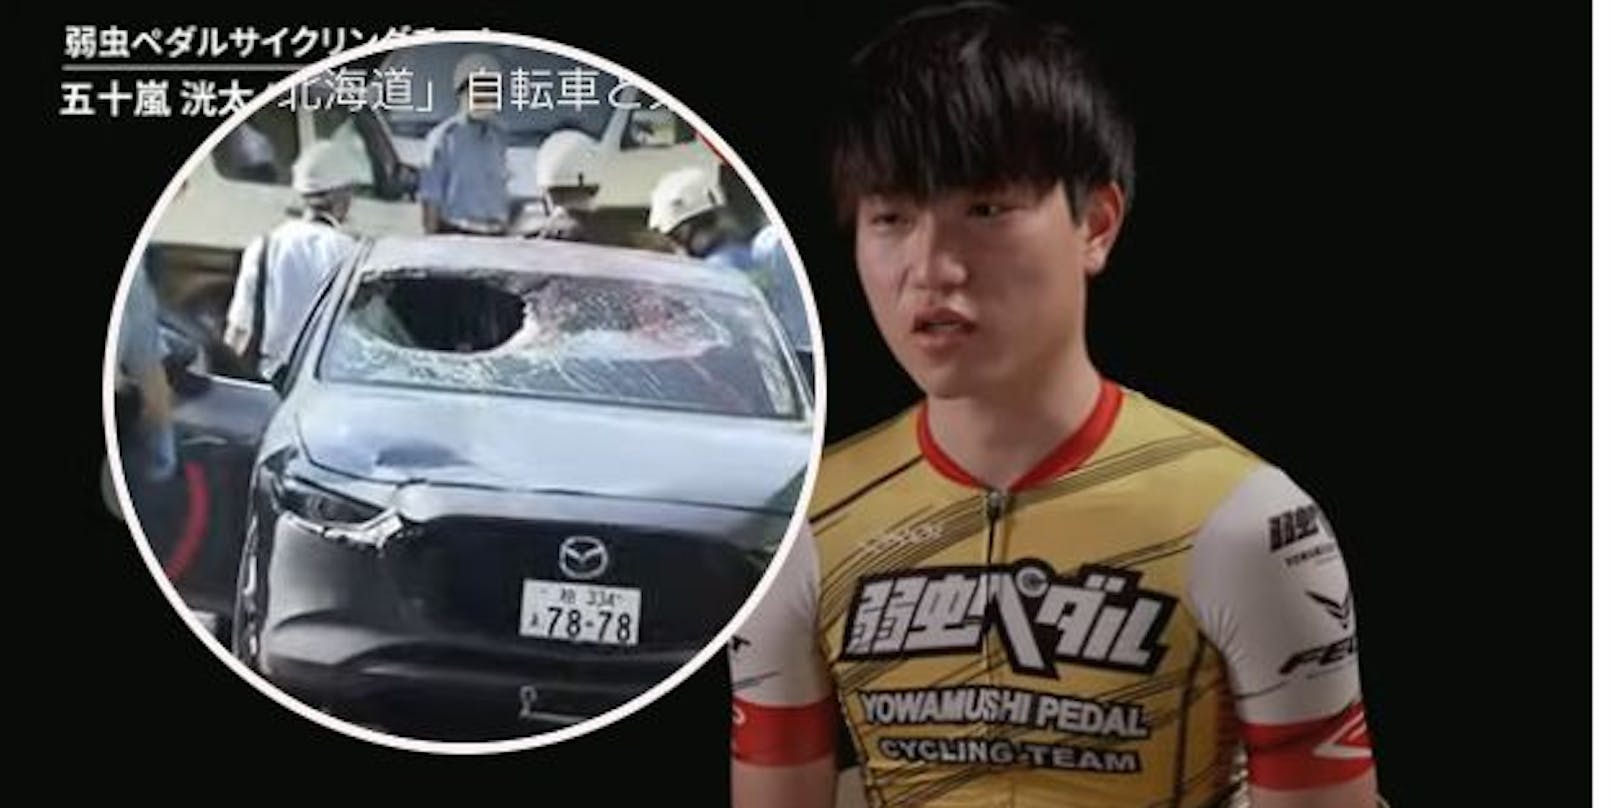 Kota Ikarashi krachte gegen ein Auto und erlag seinen Verletzungen.